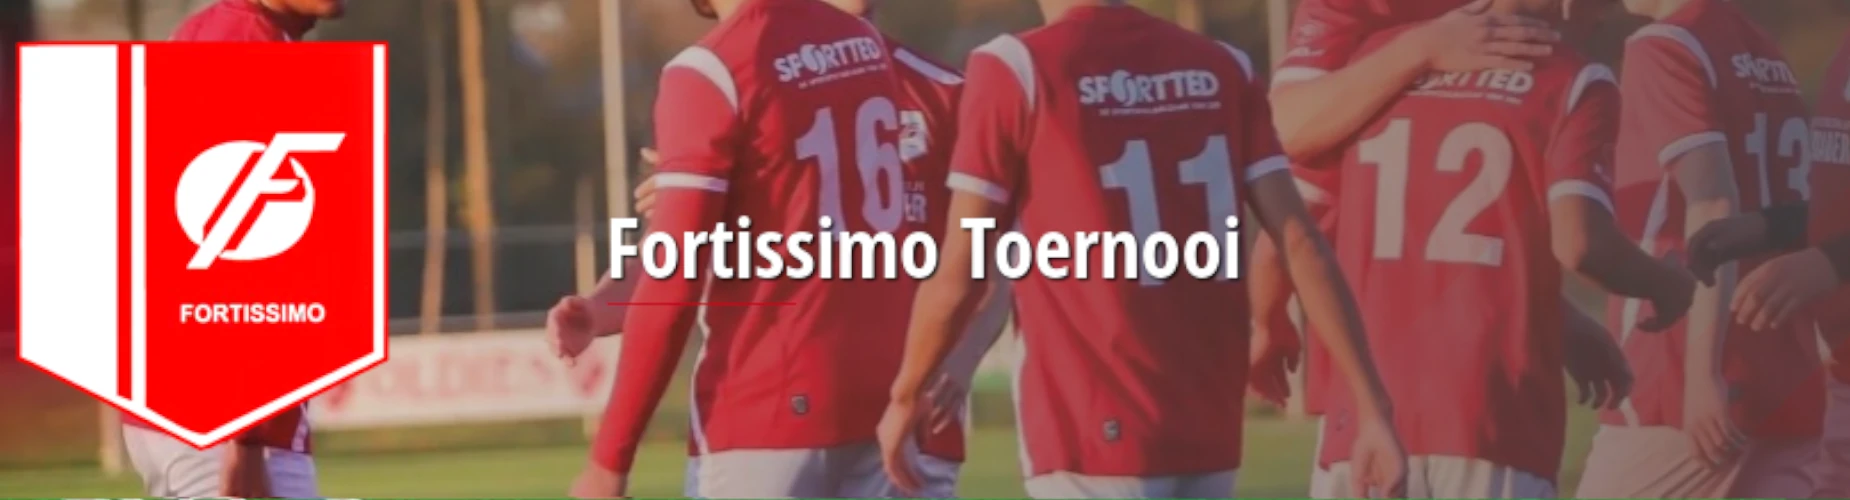 Banner - JO14 - Fortissimo Toernooi - KSV Fortissimo - Ede